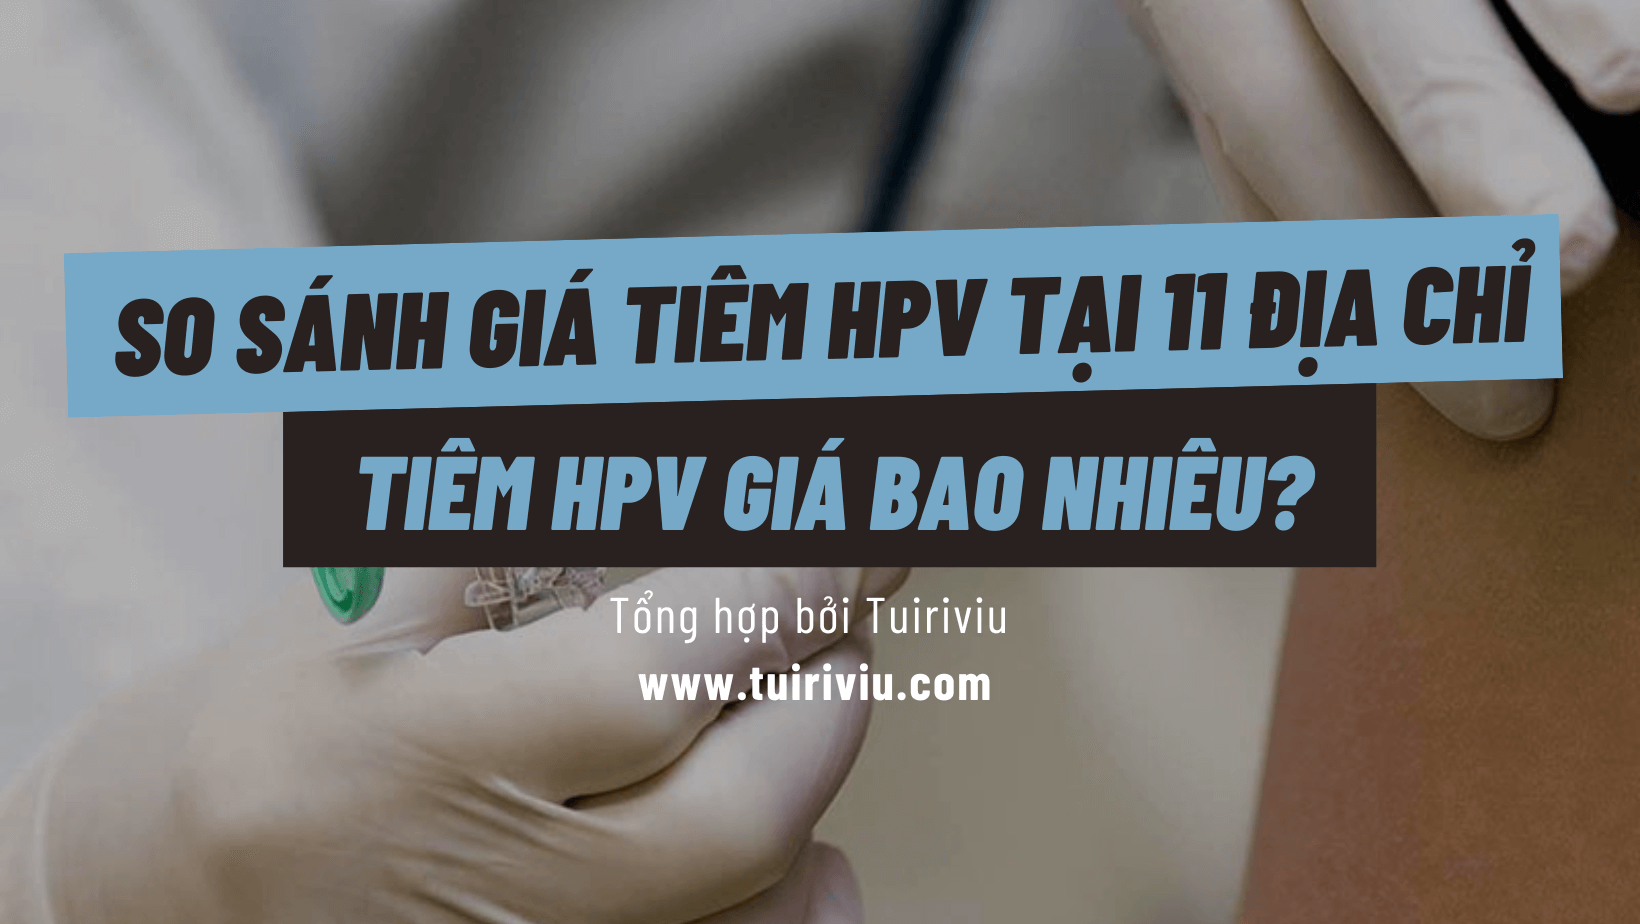 Giá tiêm HPV tuiriviu